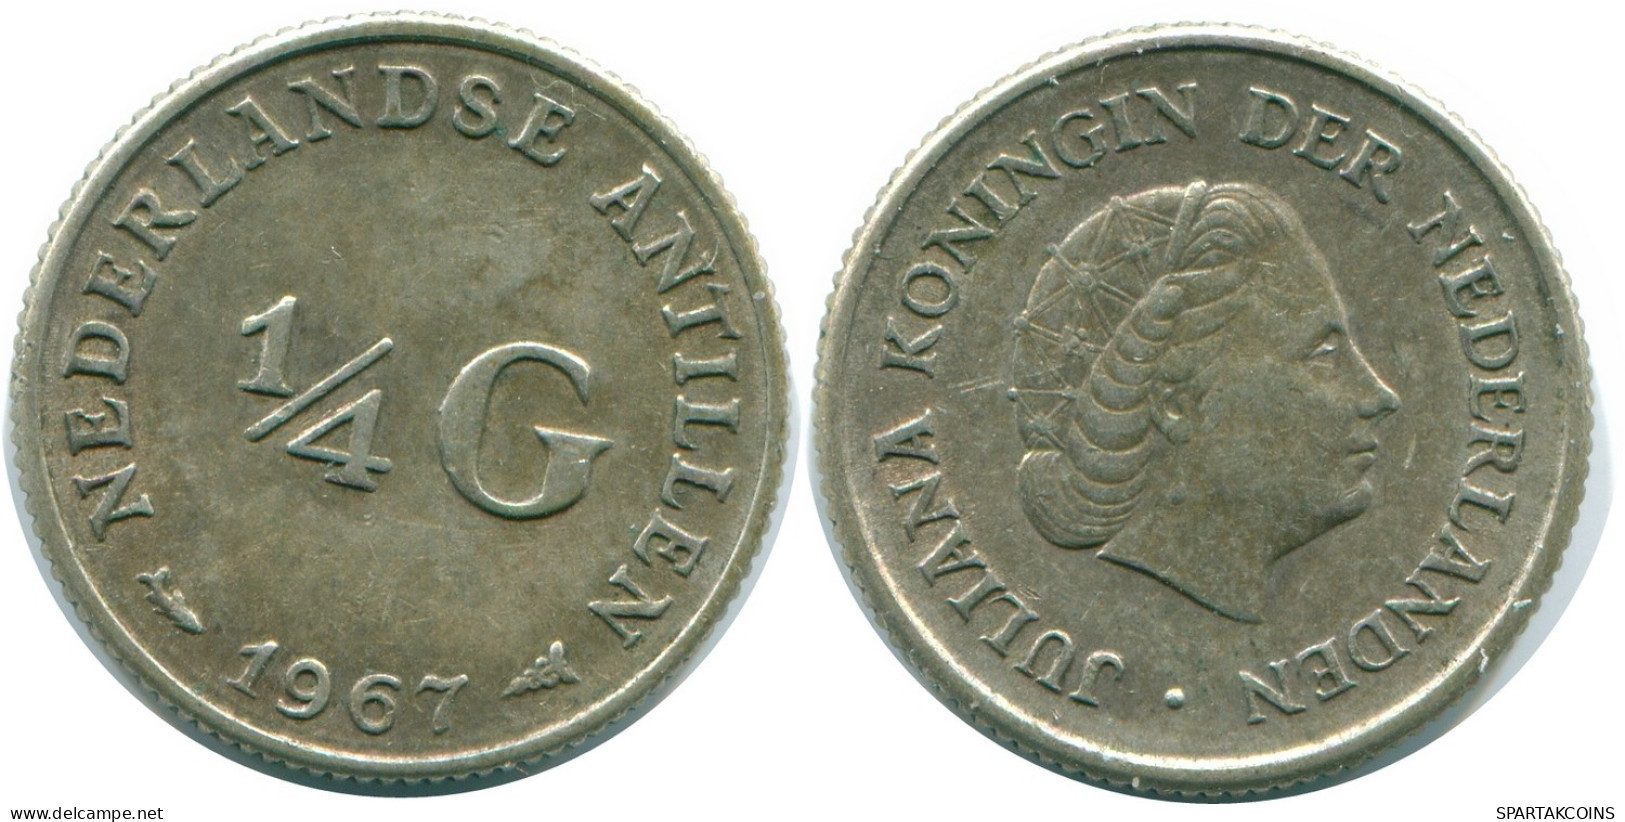 1/4 GULDEN 1967 NIEDERLÄNDISCHE ANTILLEN SILBER Koloniale Münze #NL11598.4.D.A - Niederländische Antillen